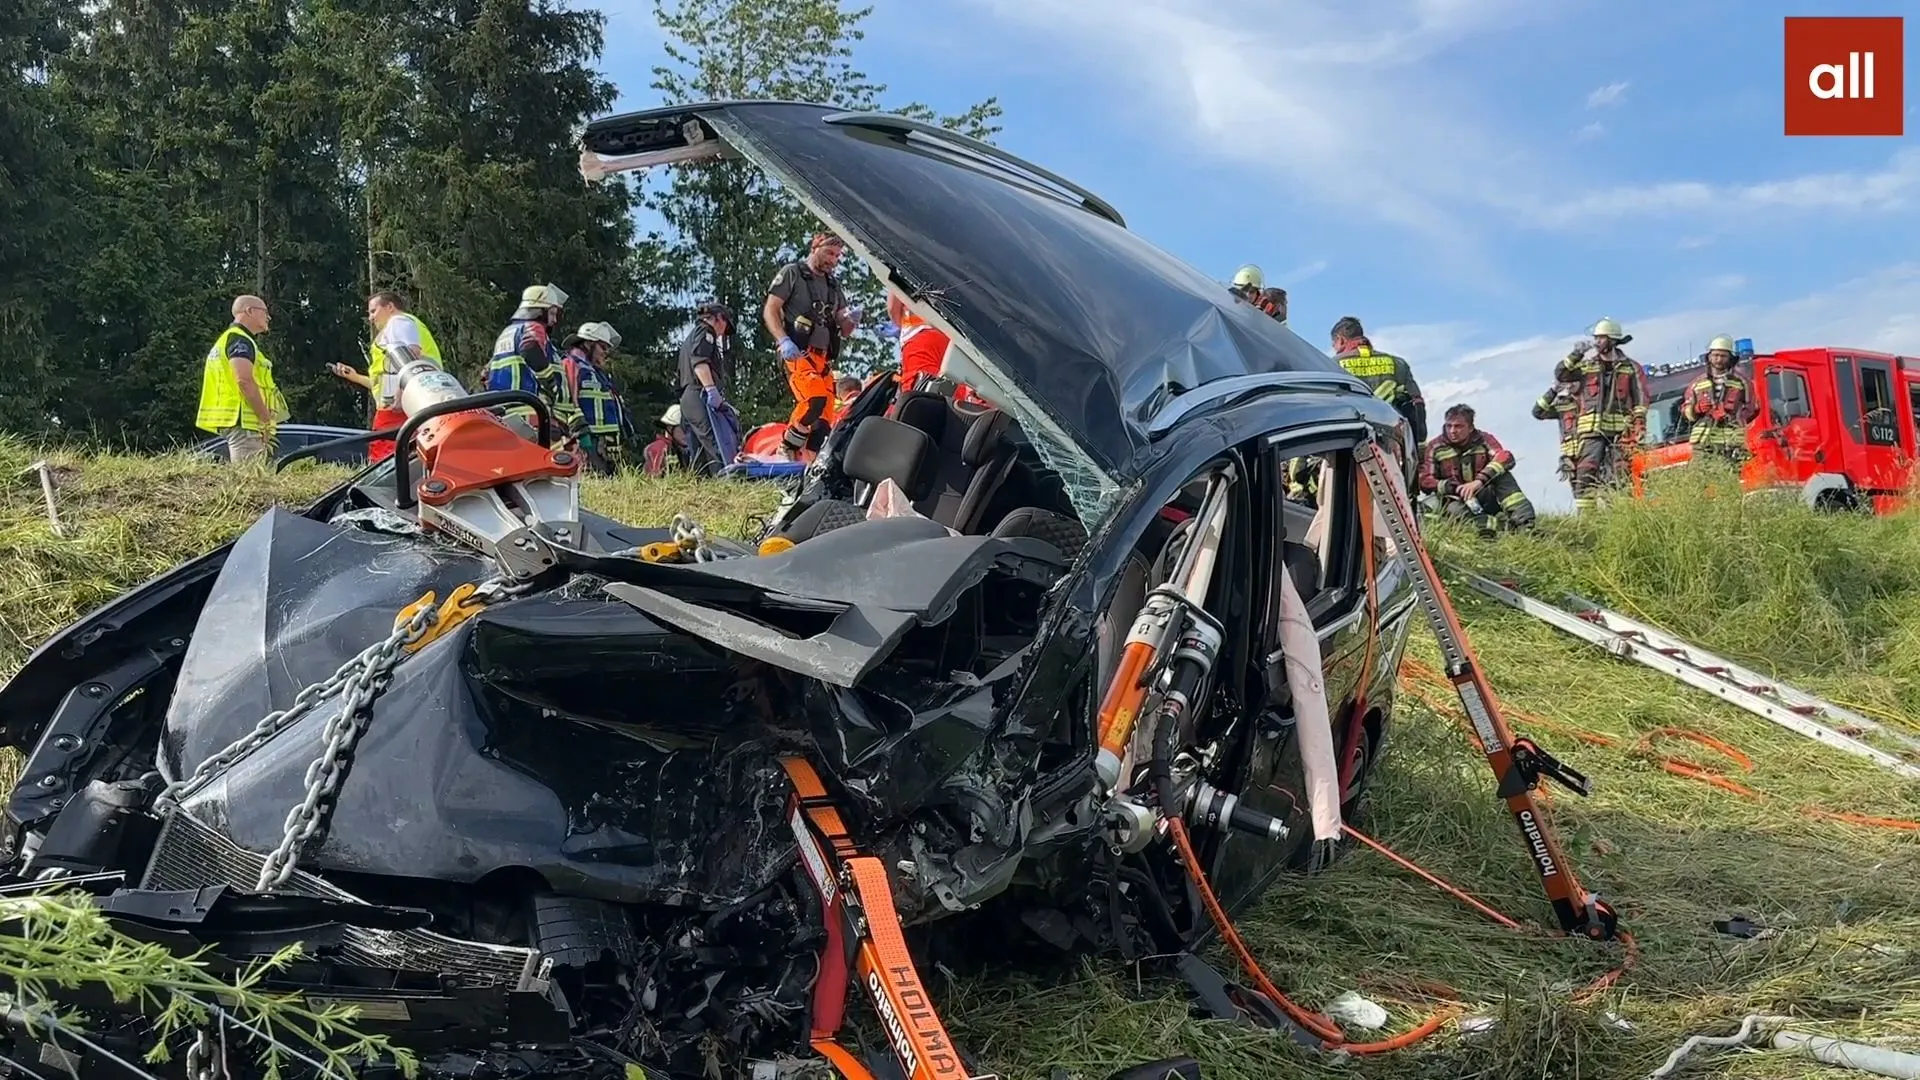 Schwerer Unfall mit drei Fahrzeugen bei Sigmarszell - Zwei Menschen schweben in Lebensgefahr